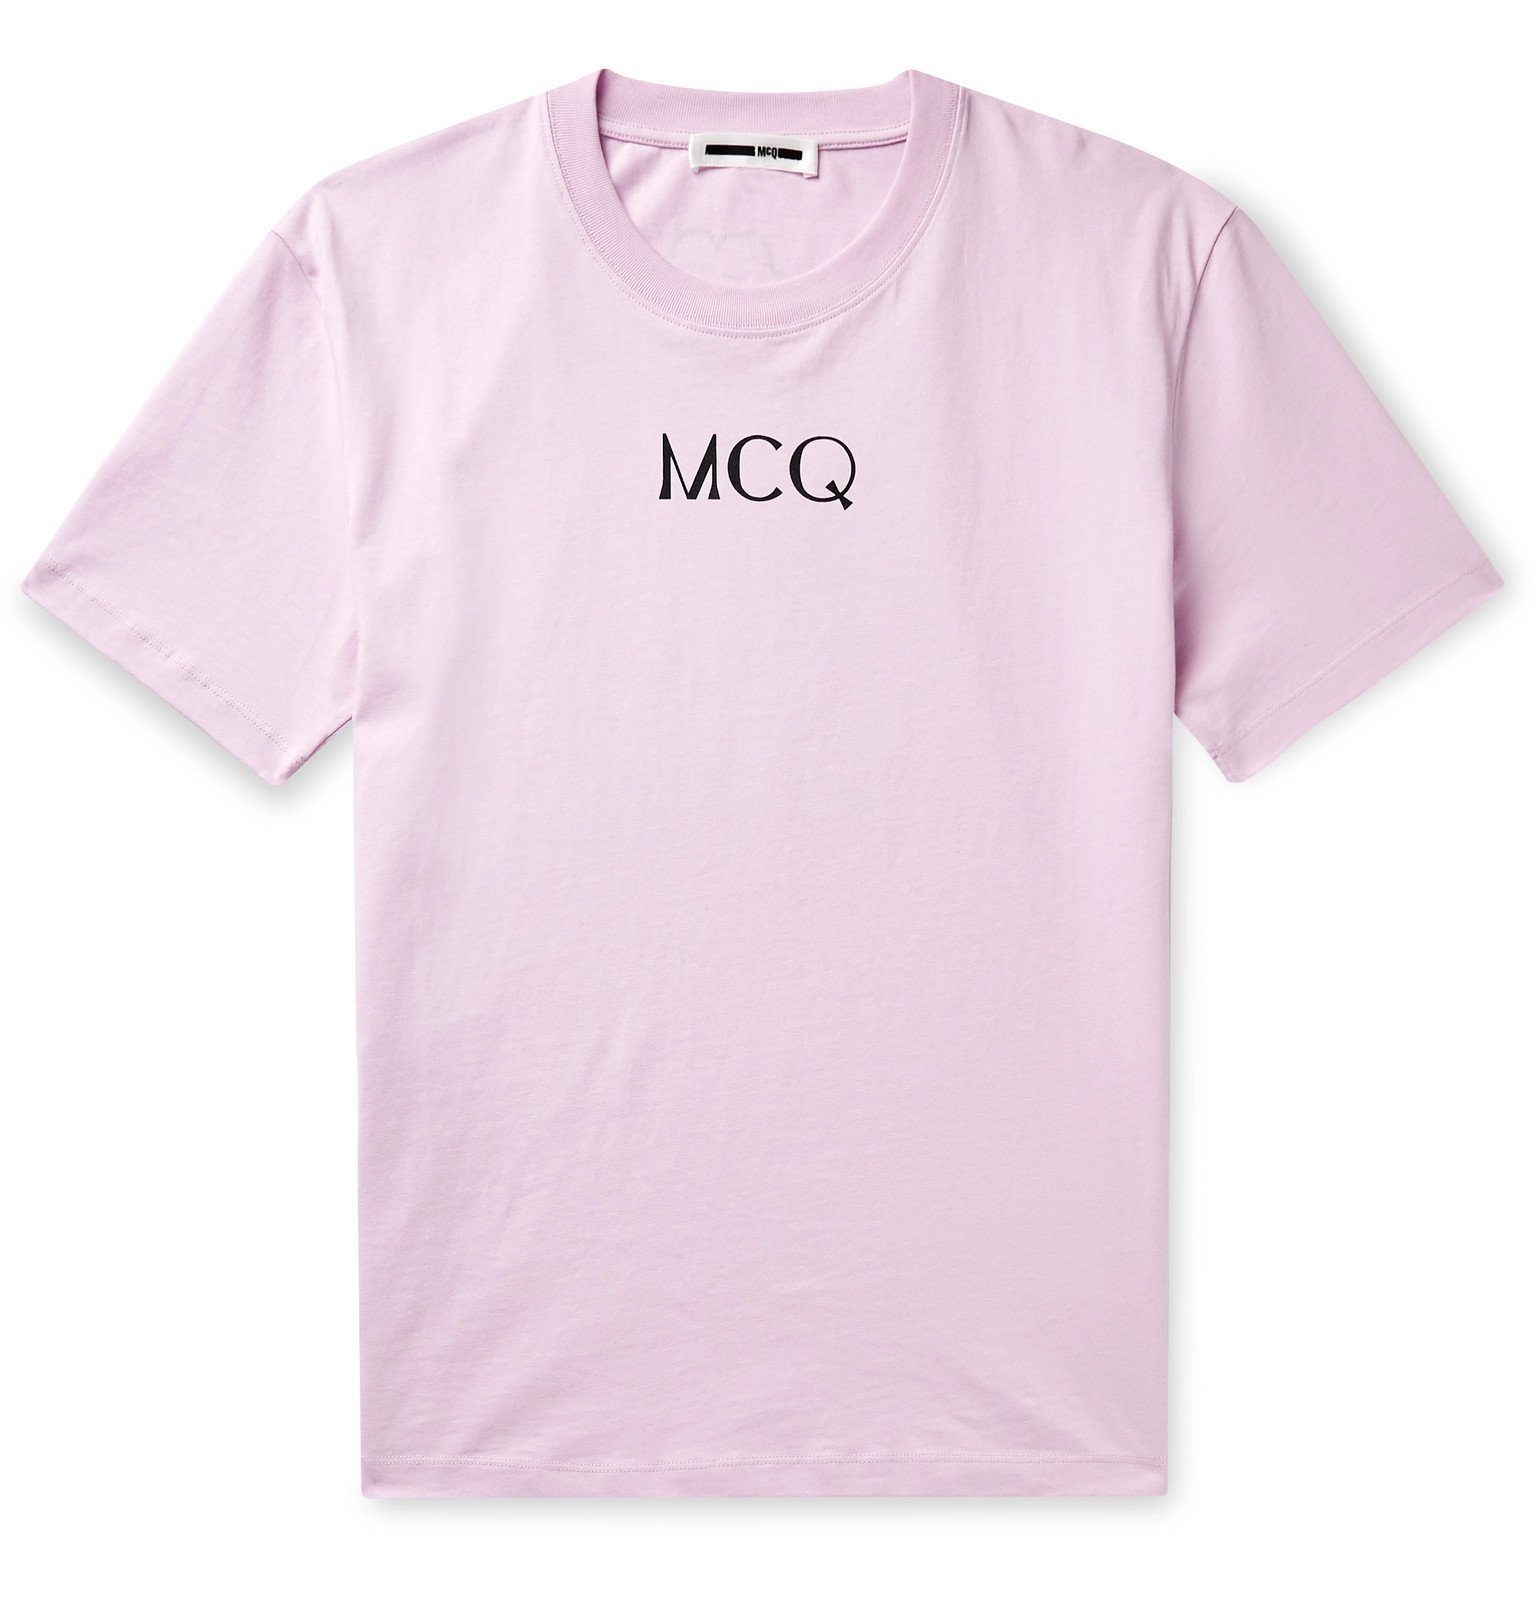 McQ Alexander McQueen - Printed Cotton-Jersey T-Shirt - Pink McQ 